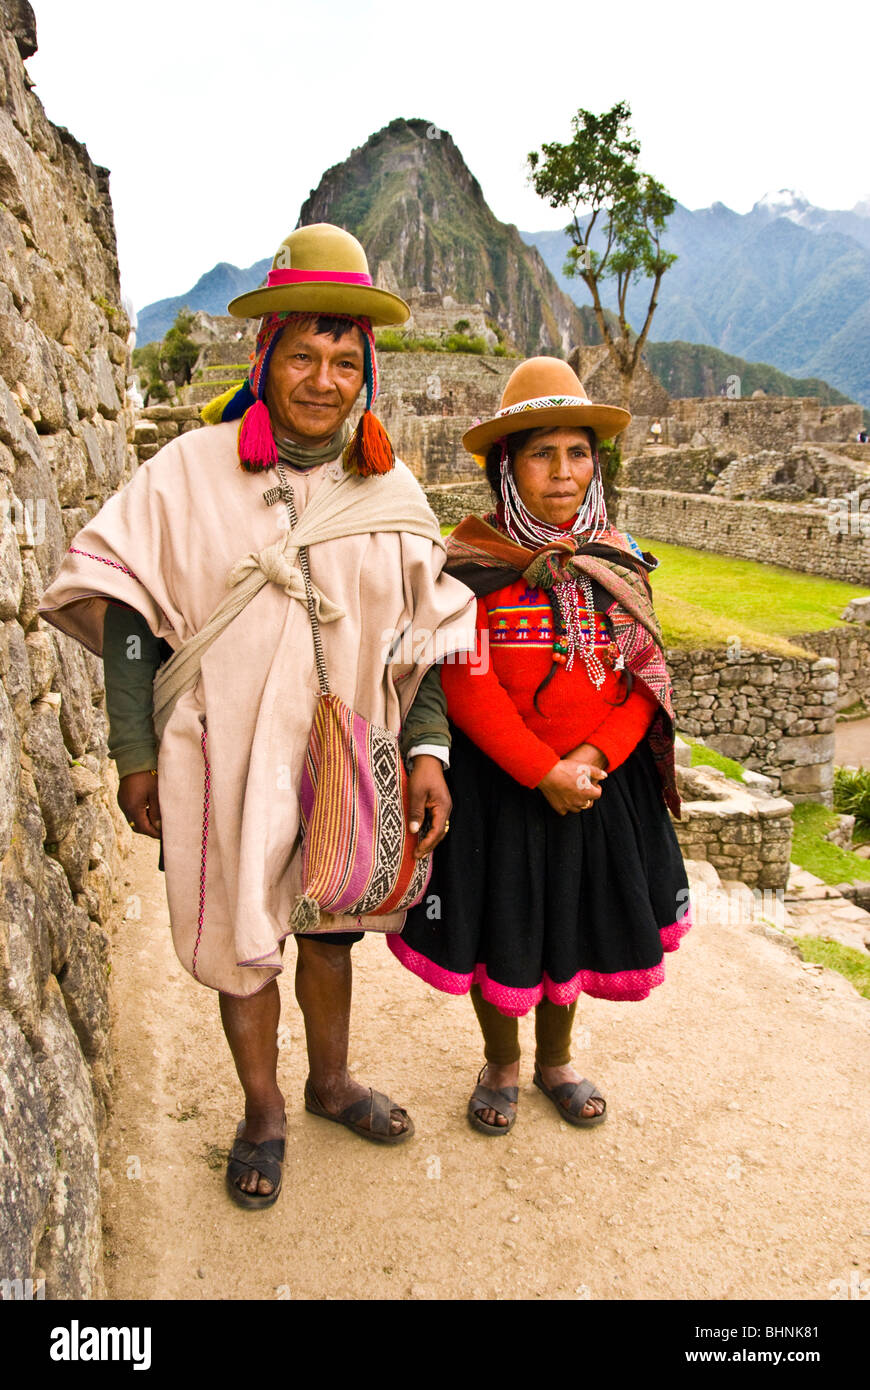 Machu Picchu, Peru,indigenous Indian man and woman, South America Stock Photo